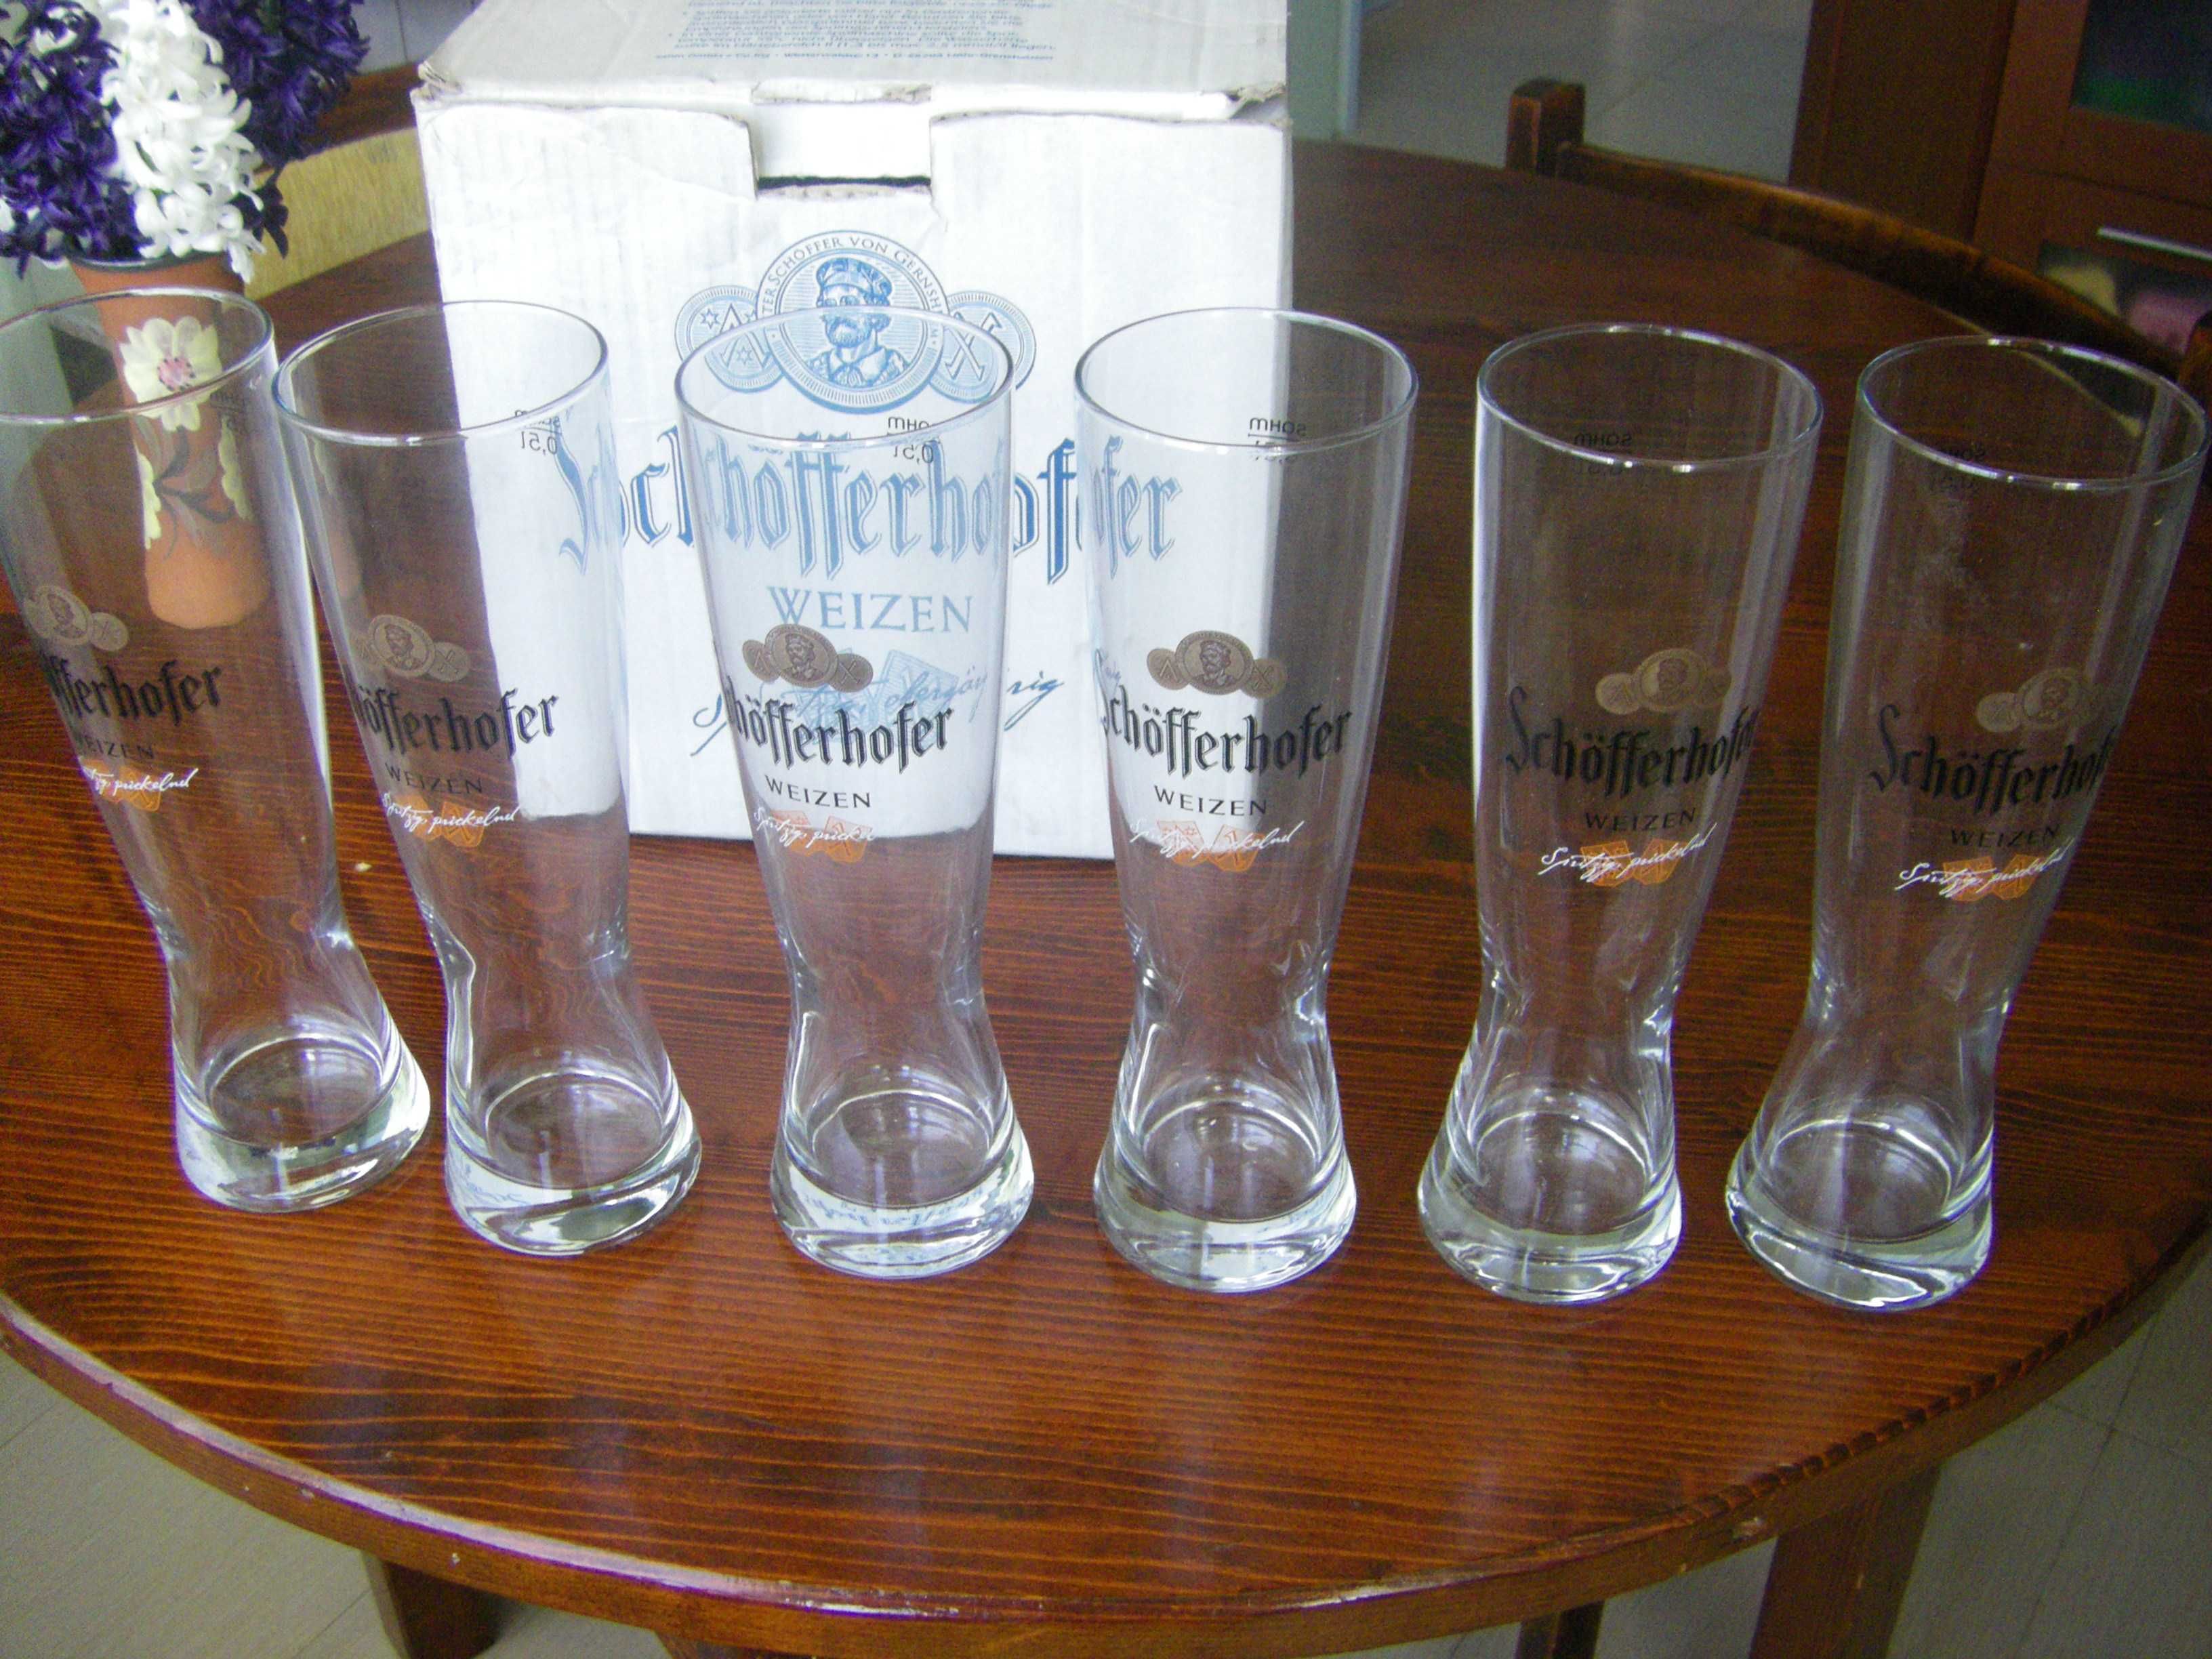 Комплекти бирени чаши по 6 бр. Ариана и Schofferhofer